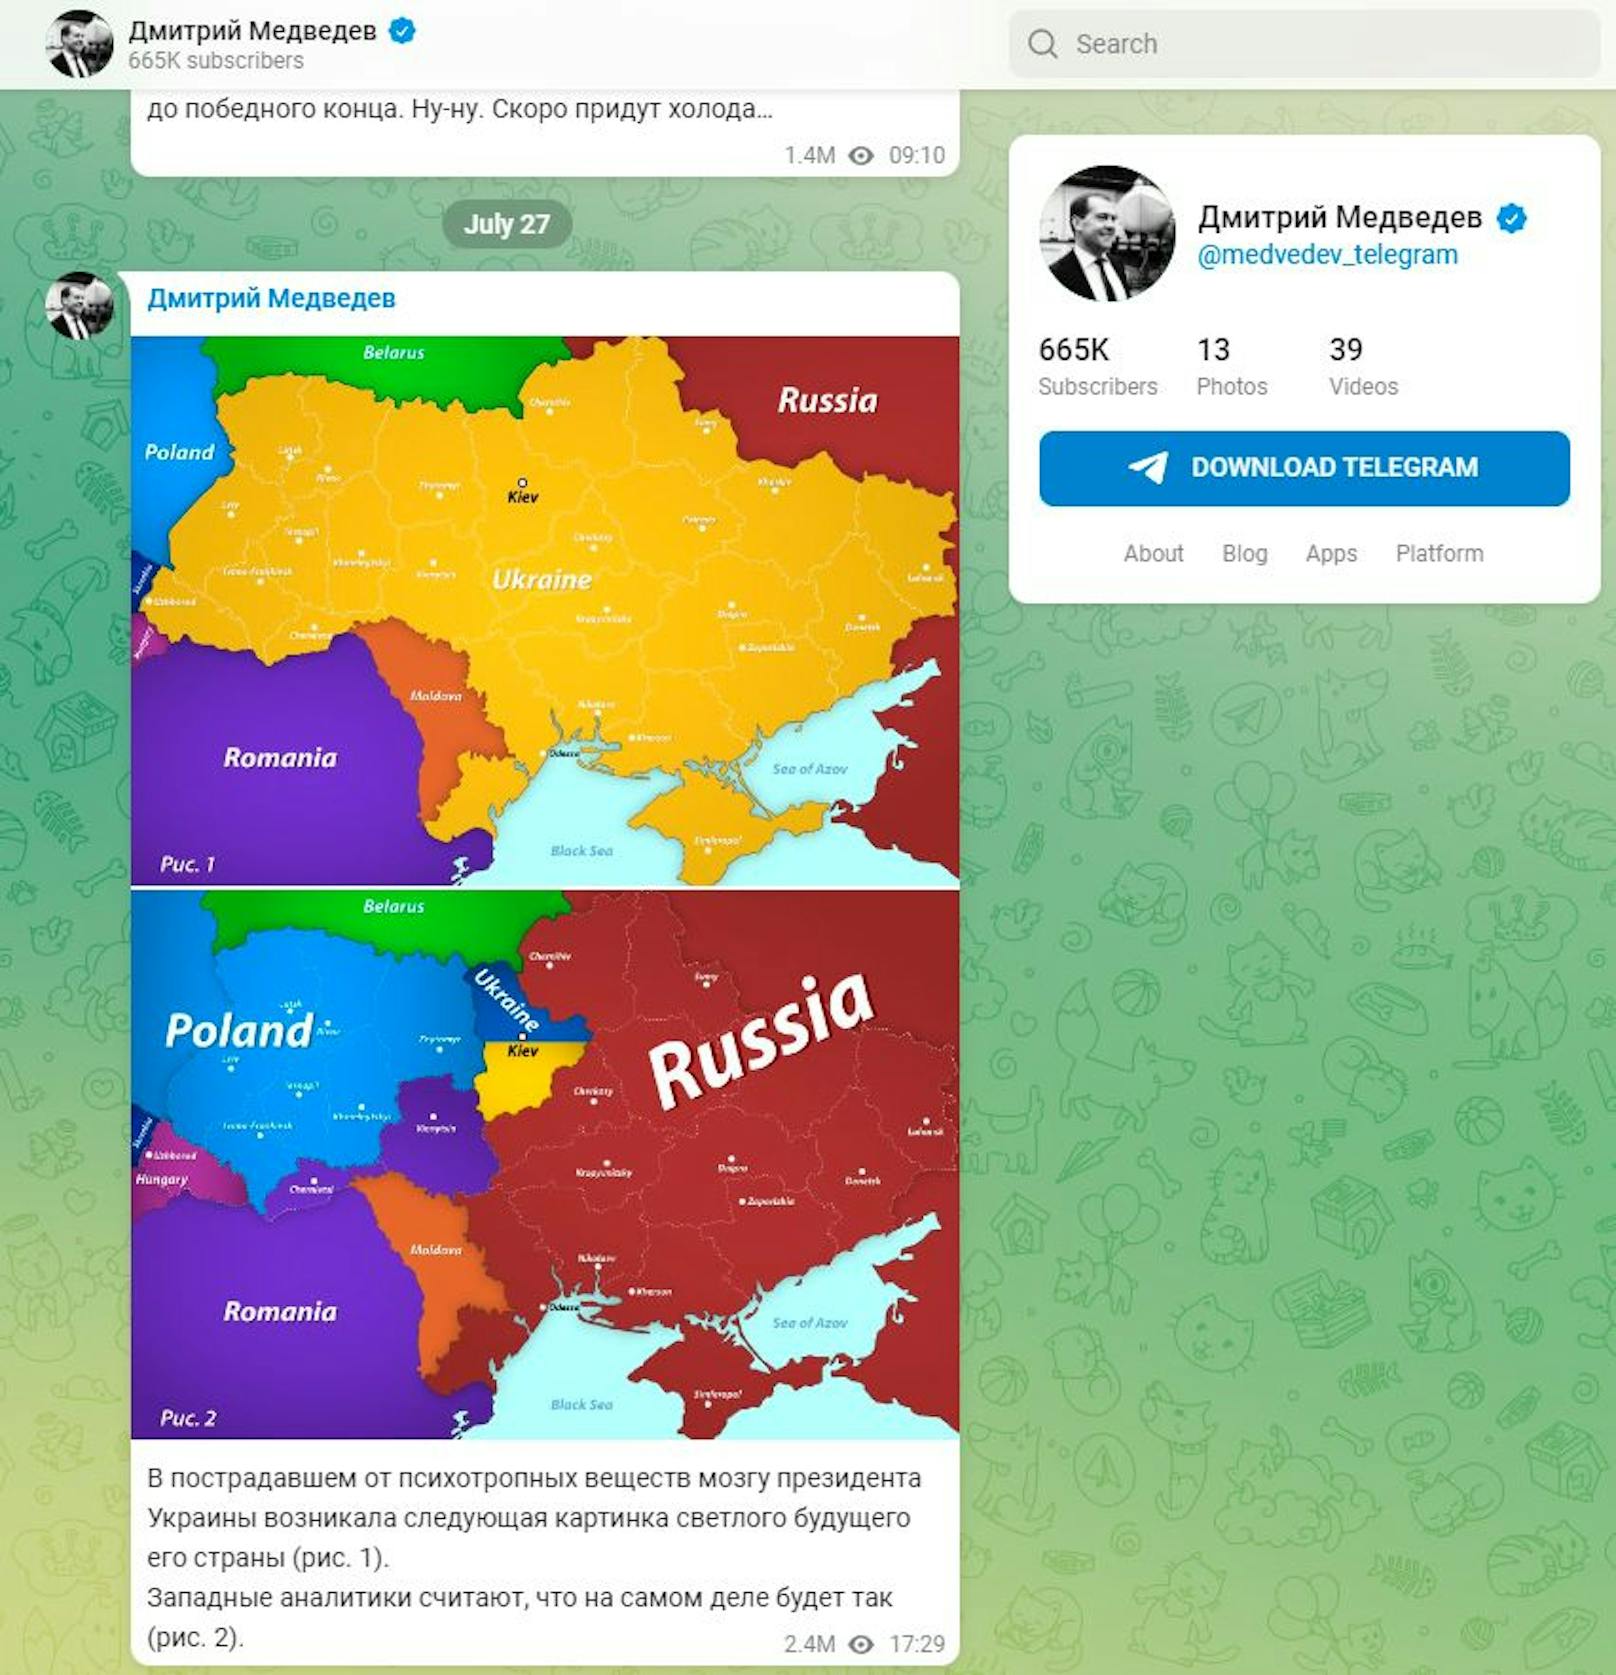 Dmitri Medwedew fantasiert auf Telegram von einer völligen Zerschlagung der Ukraine. In zwei Grafiken...